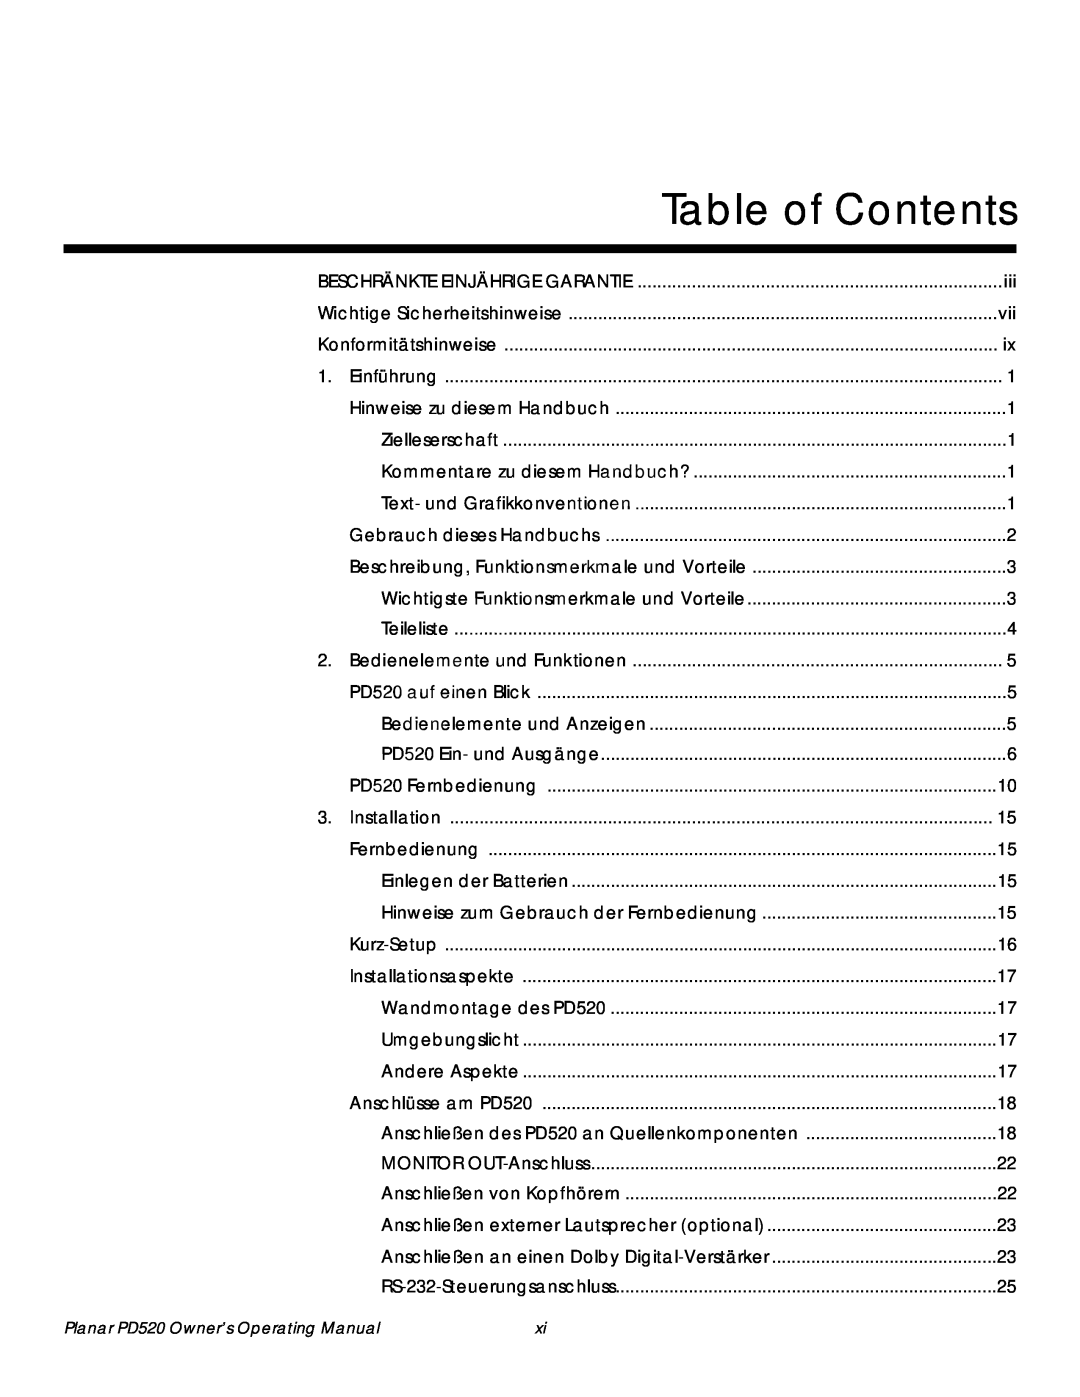 Planar PD520 manual Table of Contents, Beschränkte Einjährige Garantie, Wichtige Sicherheitshinweise, Konformitätshinweise 